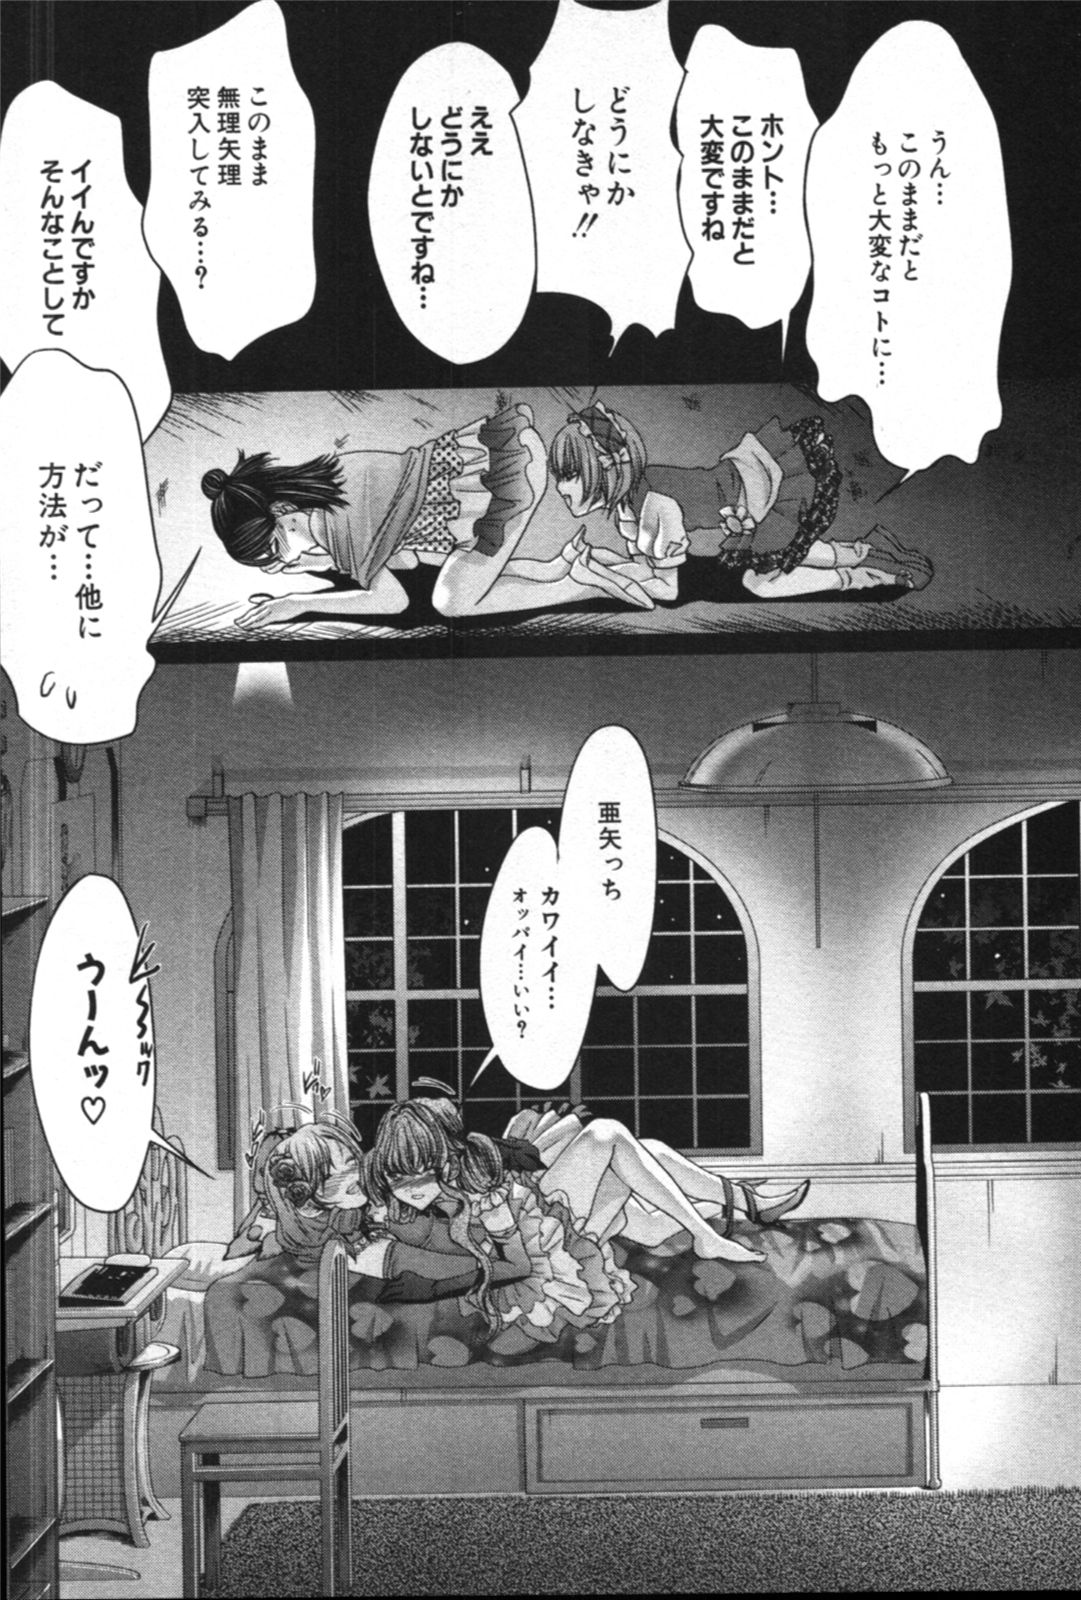 [Maya Miyazaki] Gokujotsu ~ Gokuraku In Joshikou Ryou Monogatari ~ Vol.3 [宮崎摩耶] ゴクジョ。～極楽院女子高寮物語～ 第03巻